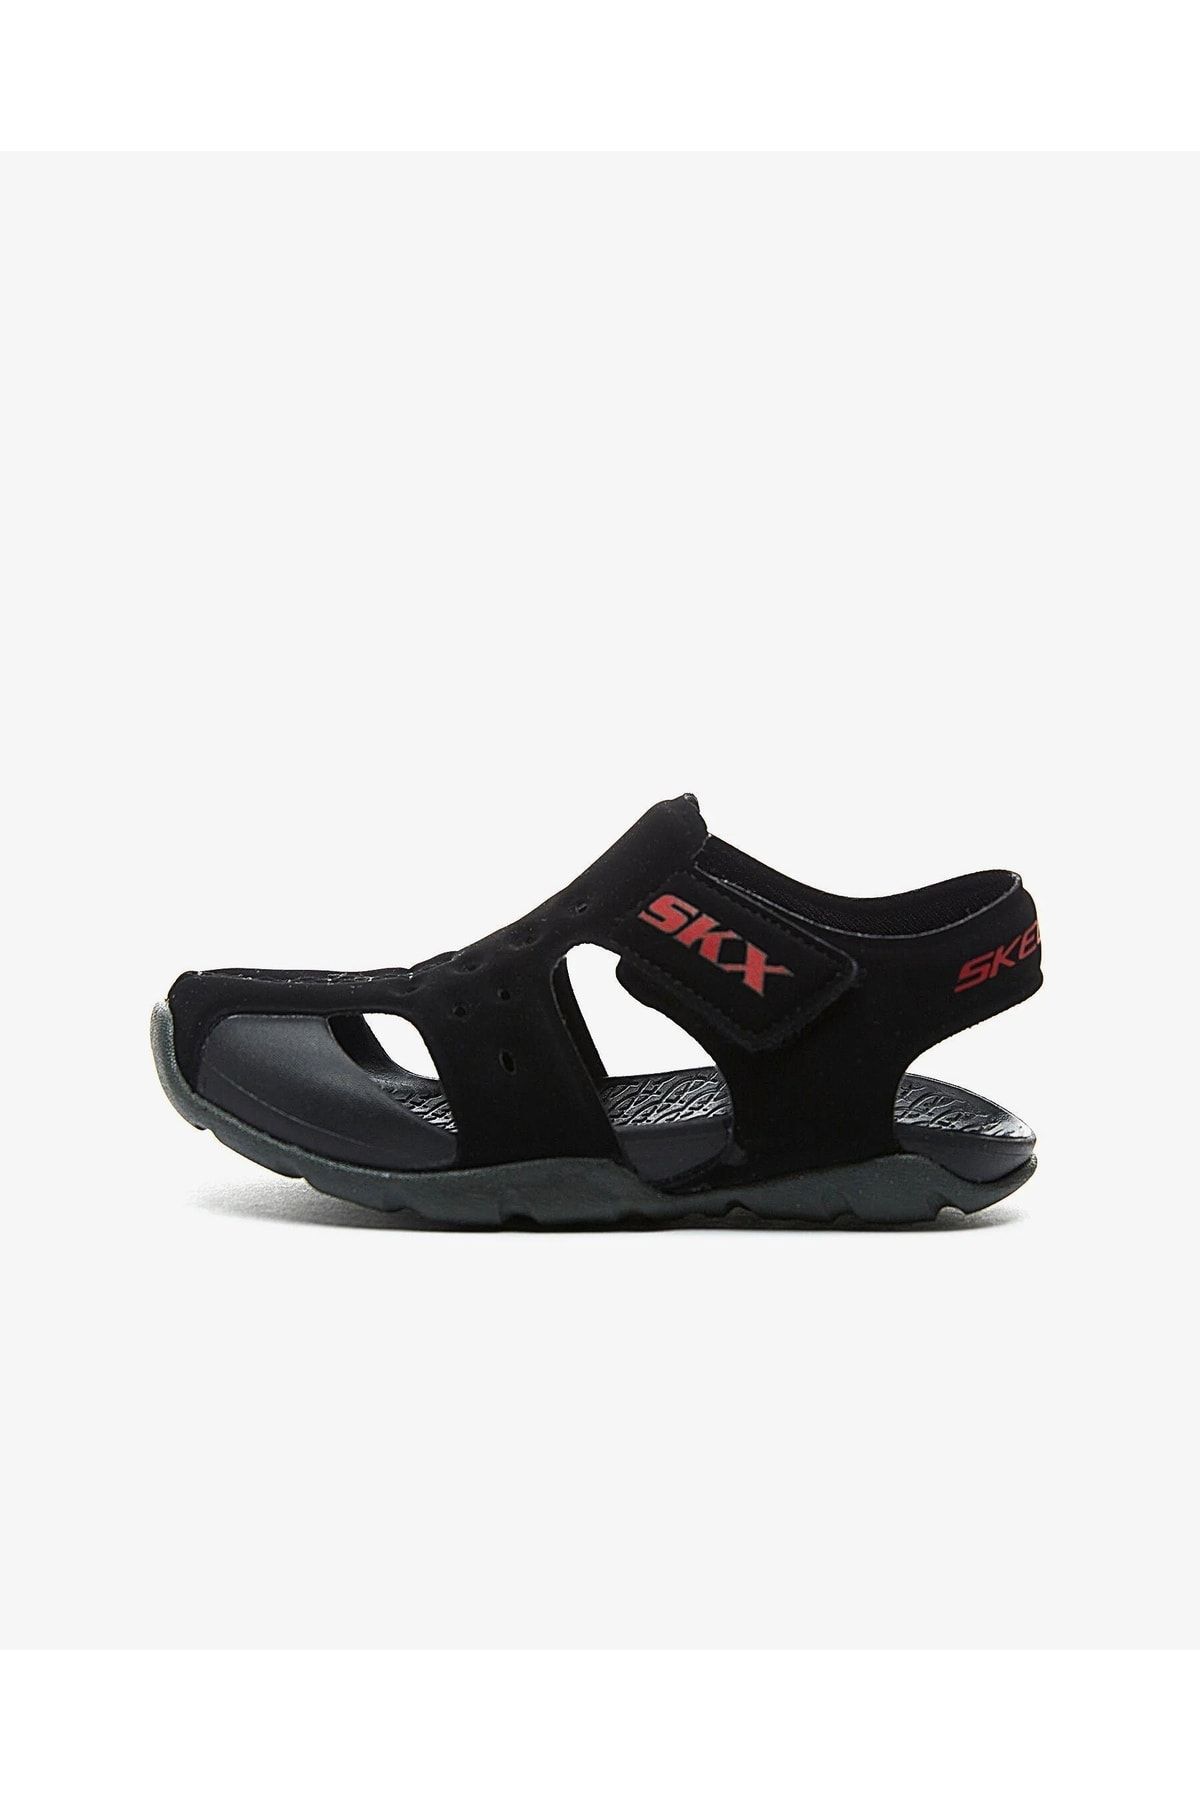 Skechers 92330N BKCC Side Wave Sandals